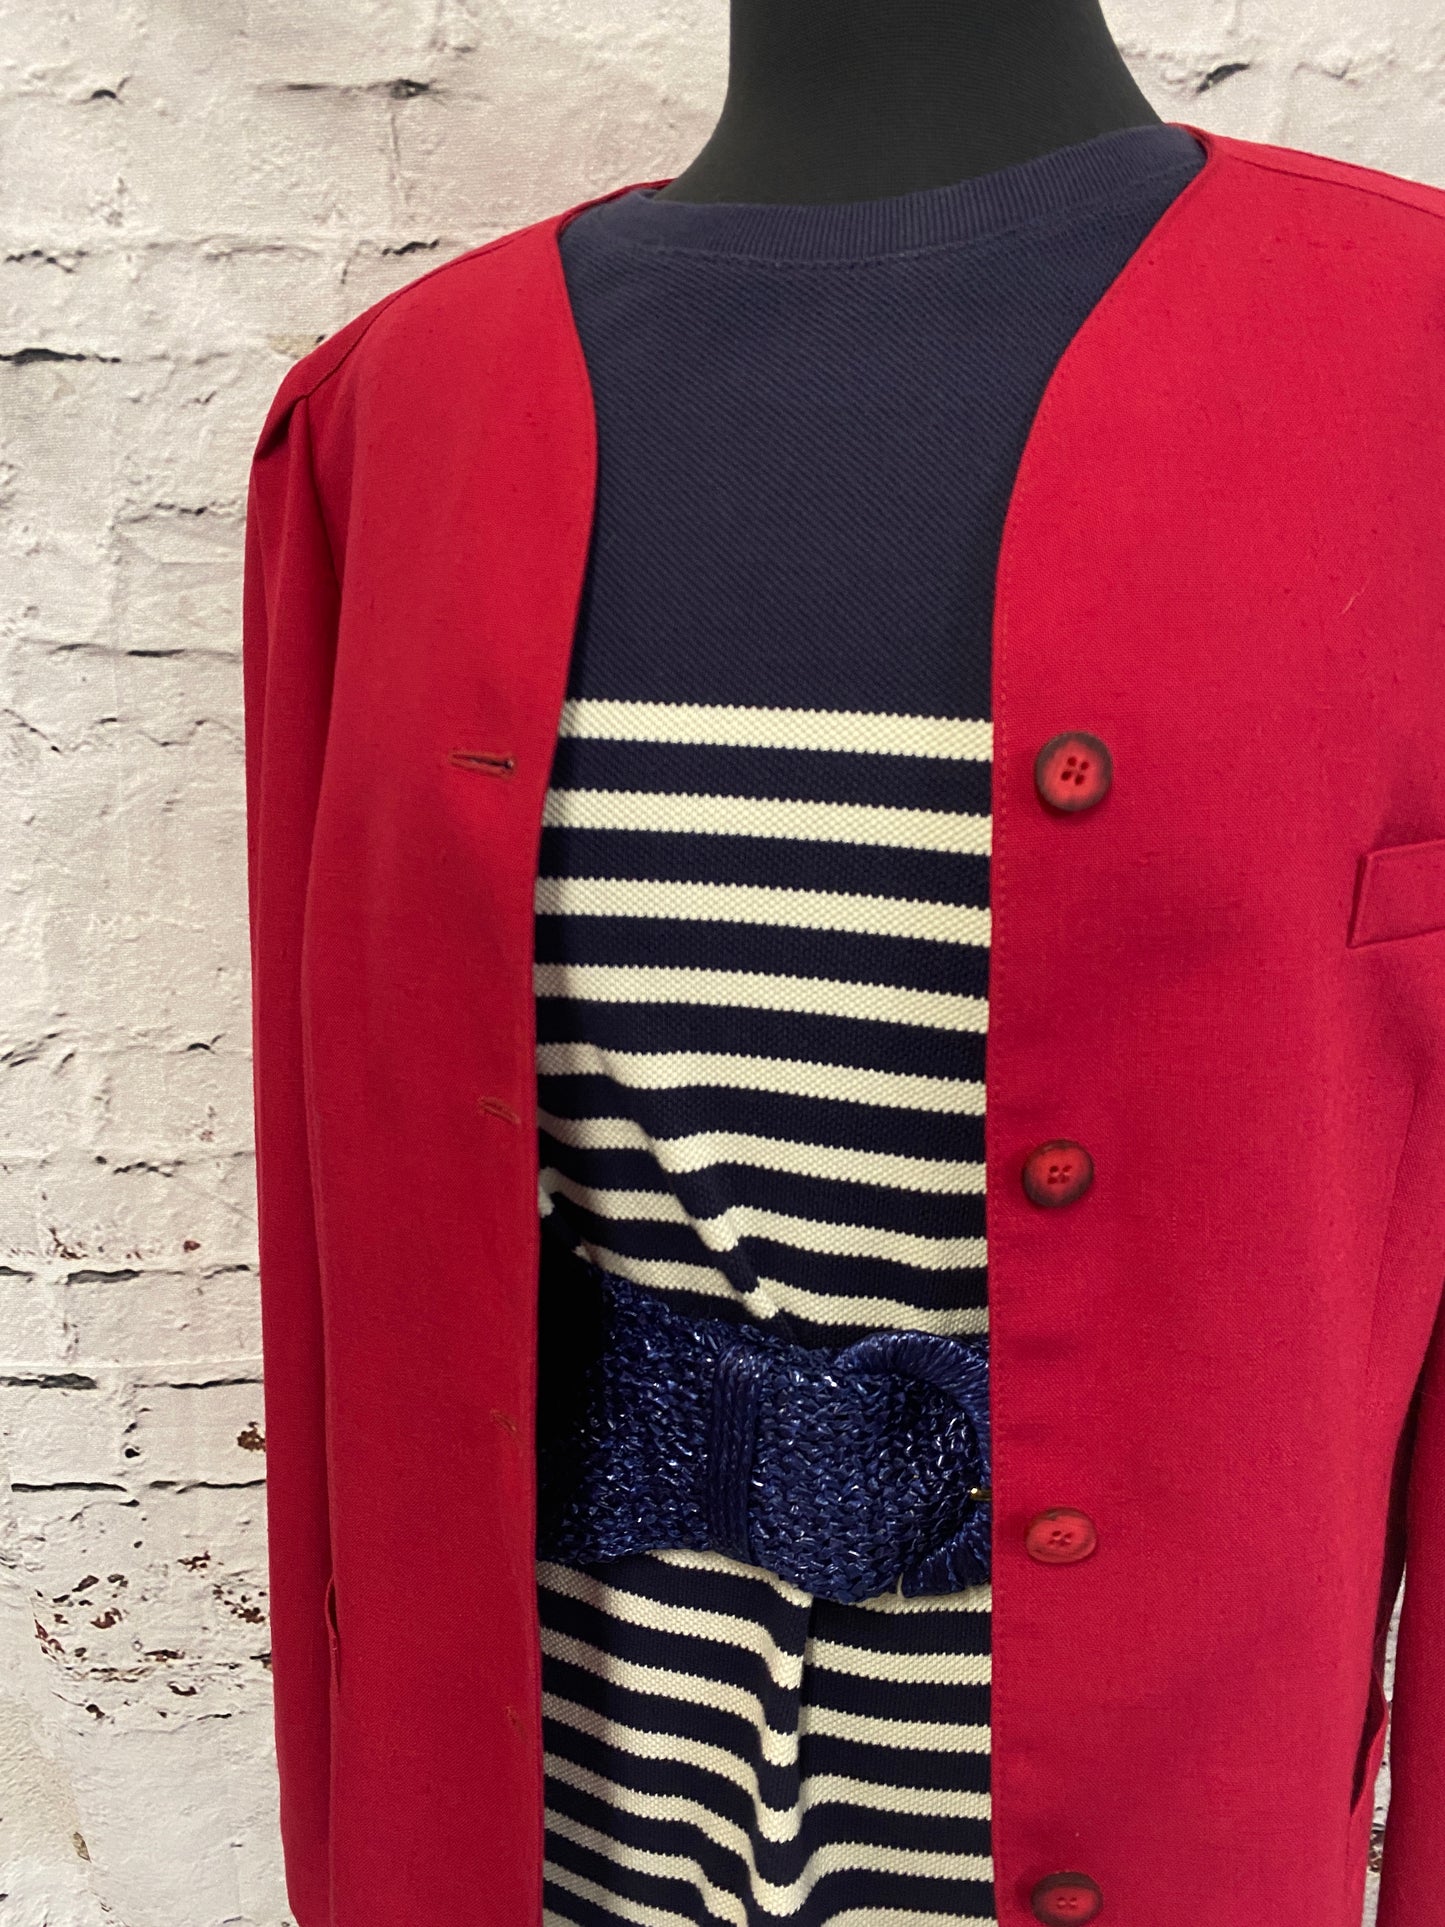 Vintage Red Formal Jacket | Blazer Size 14